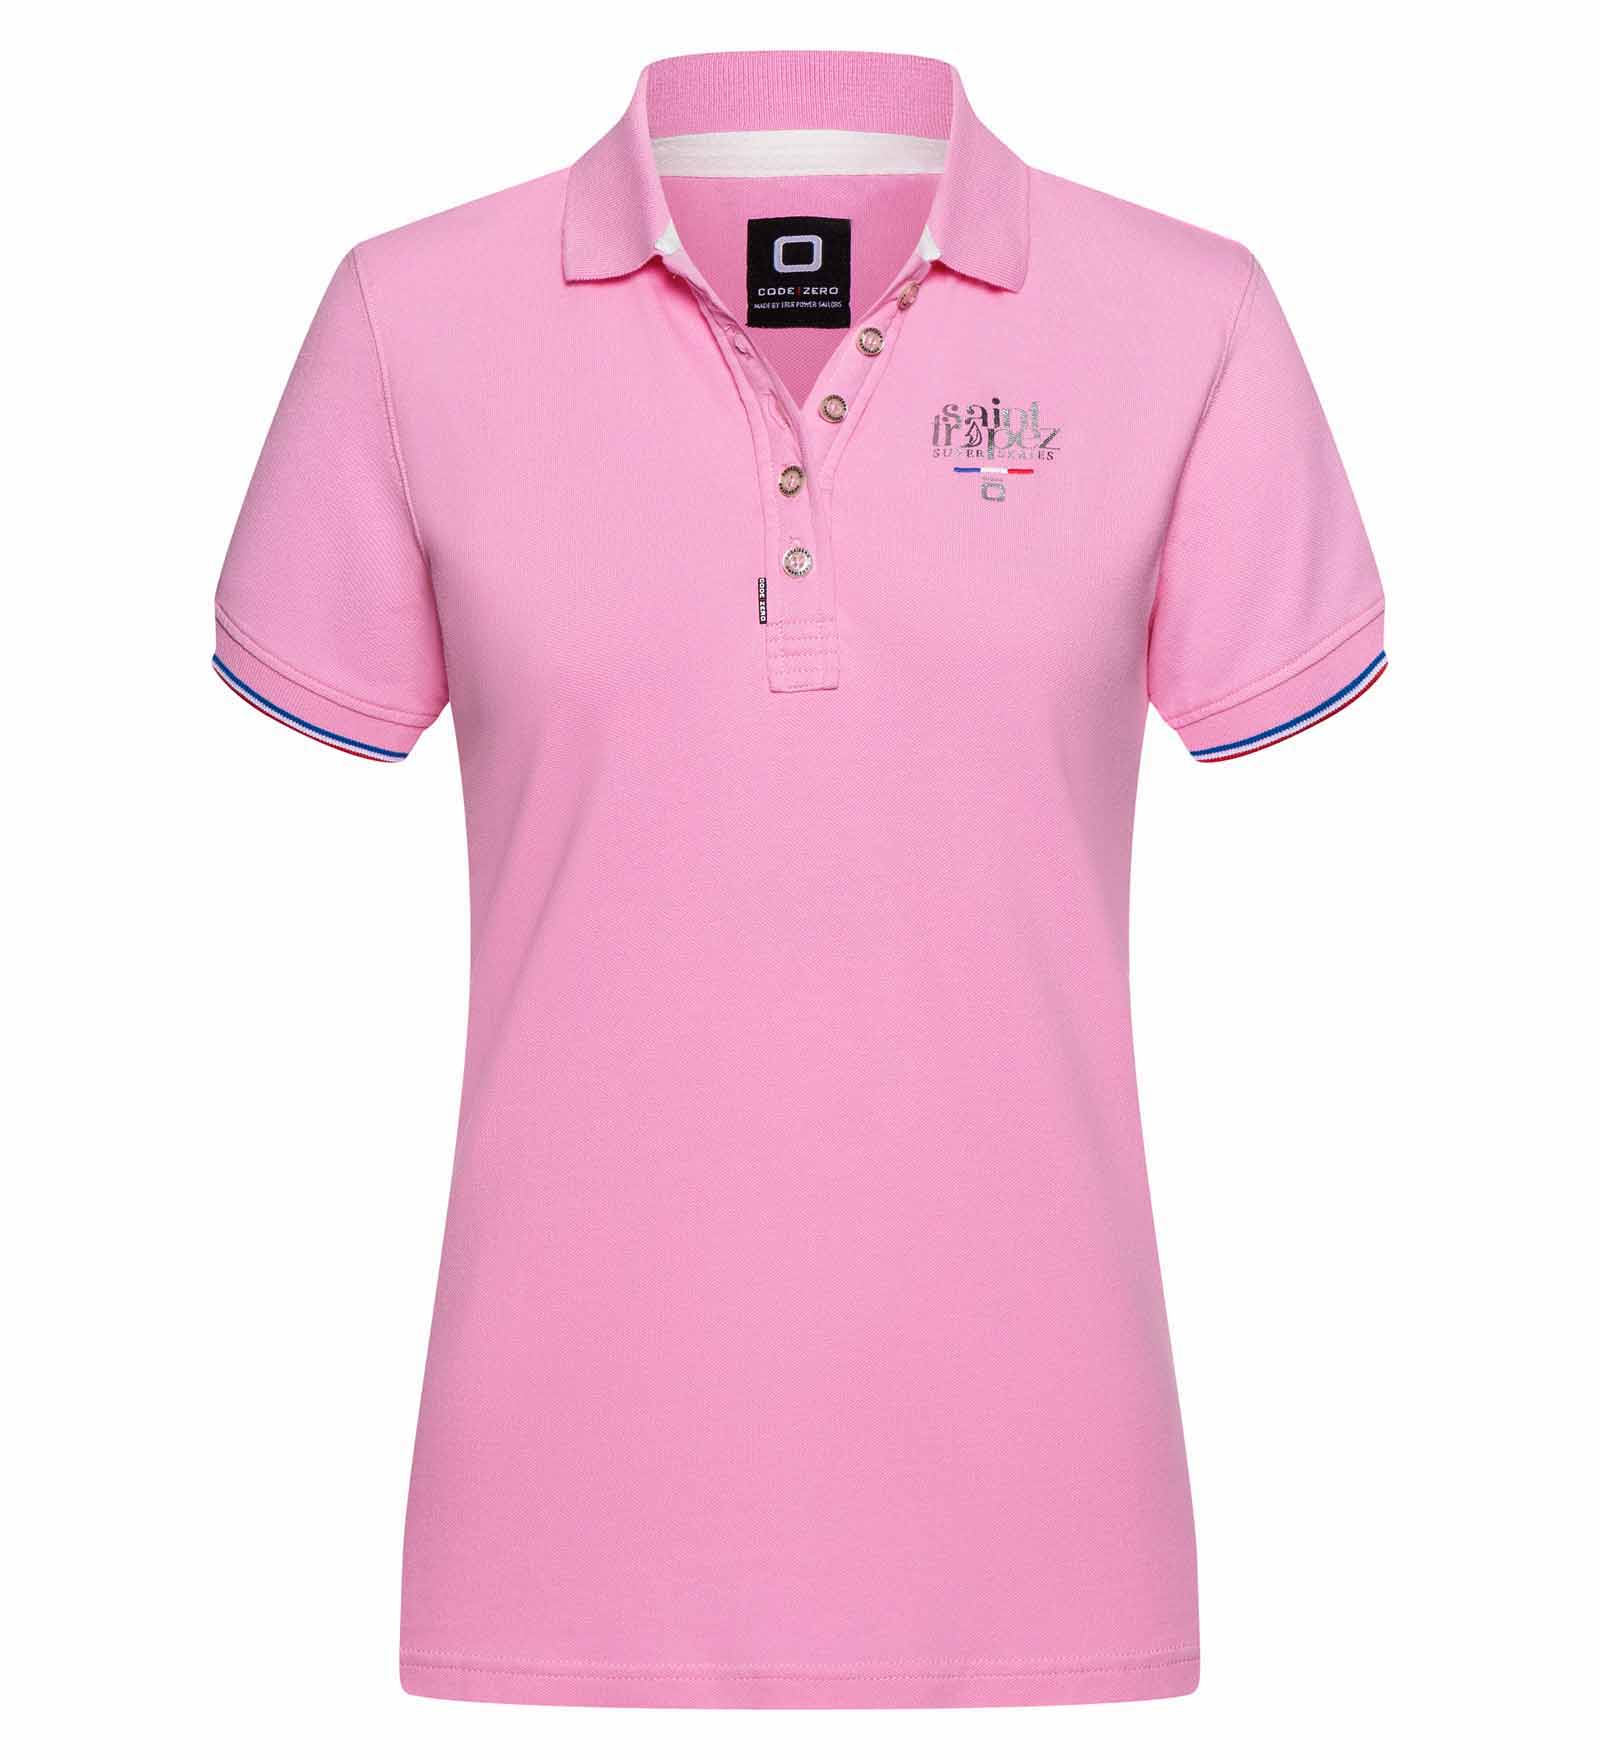 Poloshirt Damen Saint-Tropez pink L 52 Super Series von 52 Super Series